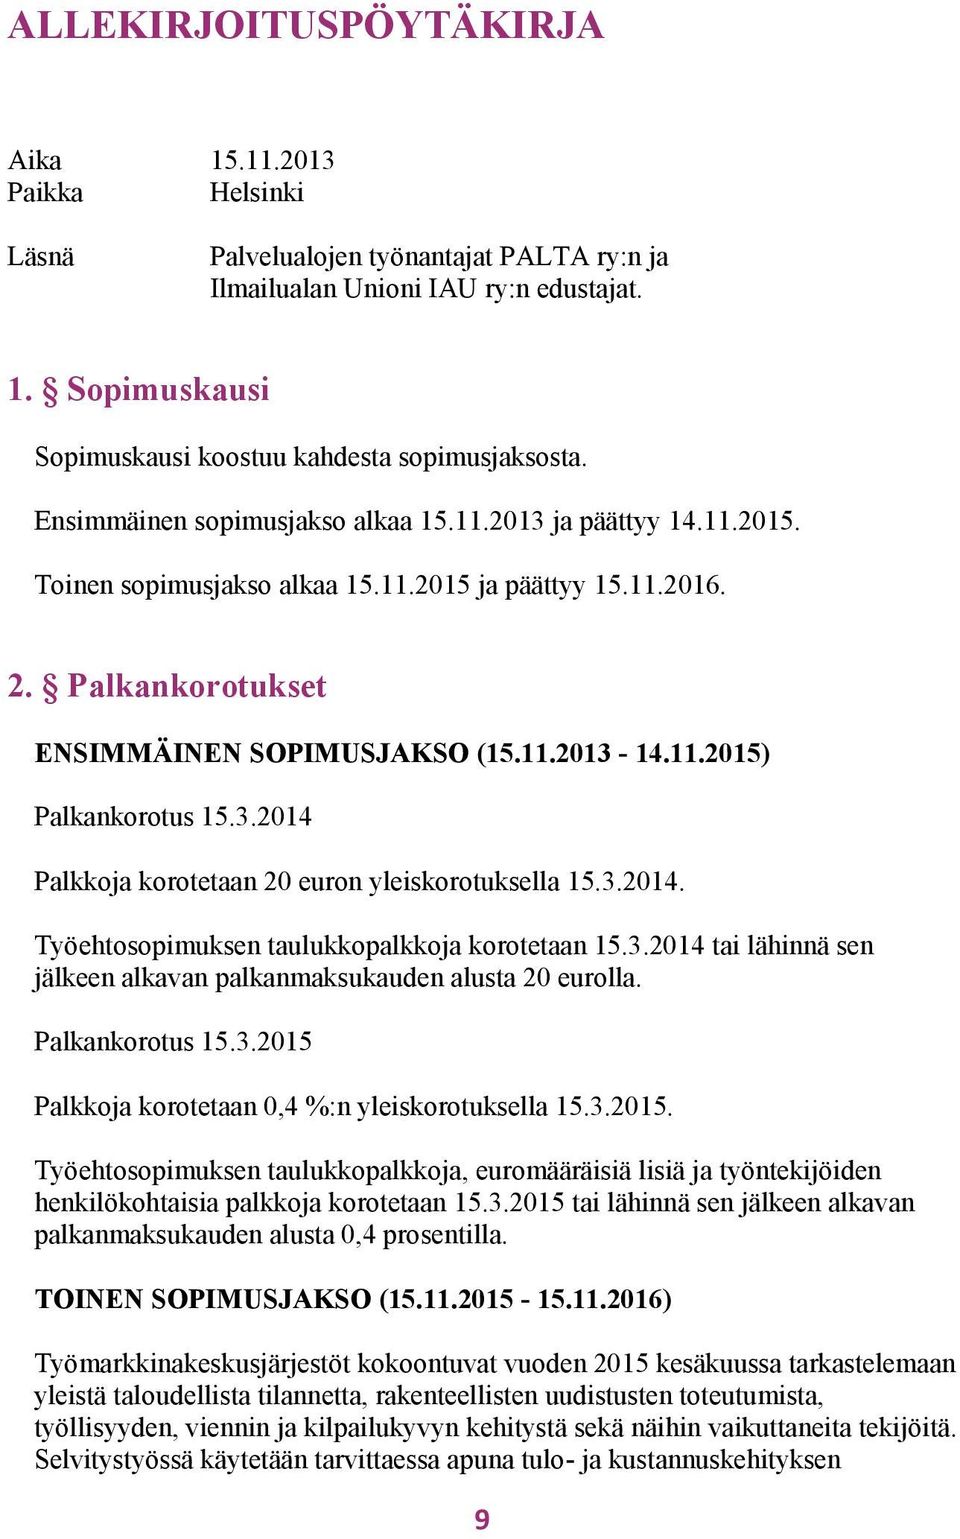 3.2014 Palkkoja korotetaan 20 euron yleiskorotuksella 15.3.2014. Työehtosopimuksen taulukkopalkkoja korotetaan 15.3.2014 tai lähinnä sen jälkeen alkavan palkanmaksukauden alusta 20 eurolla.